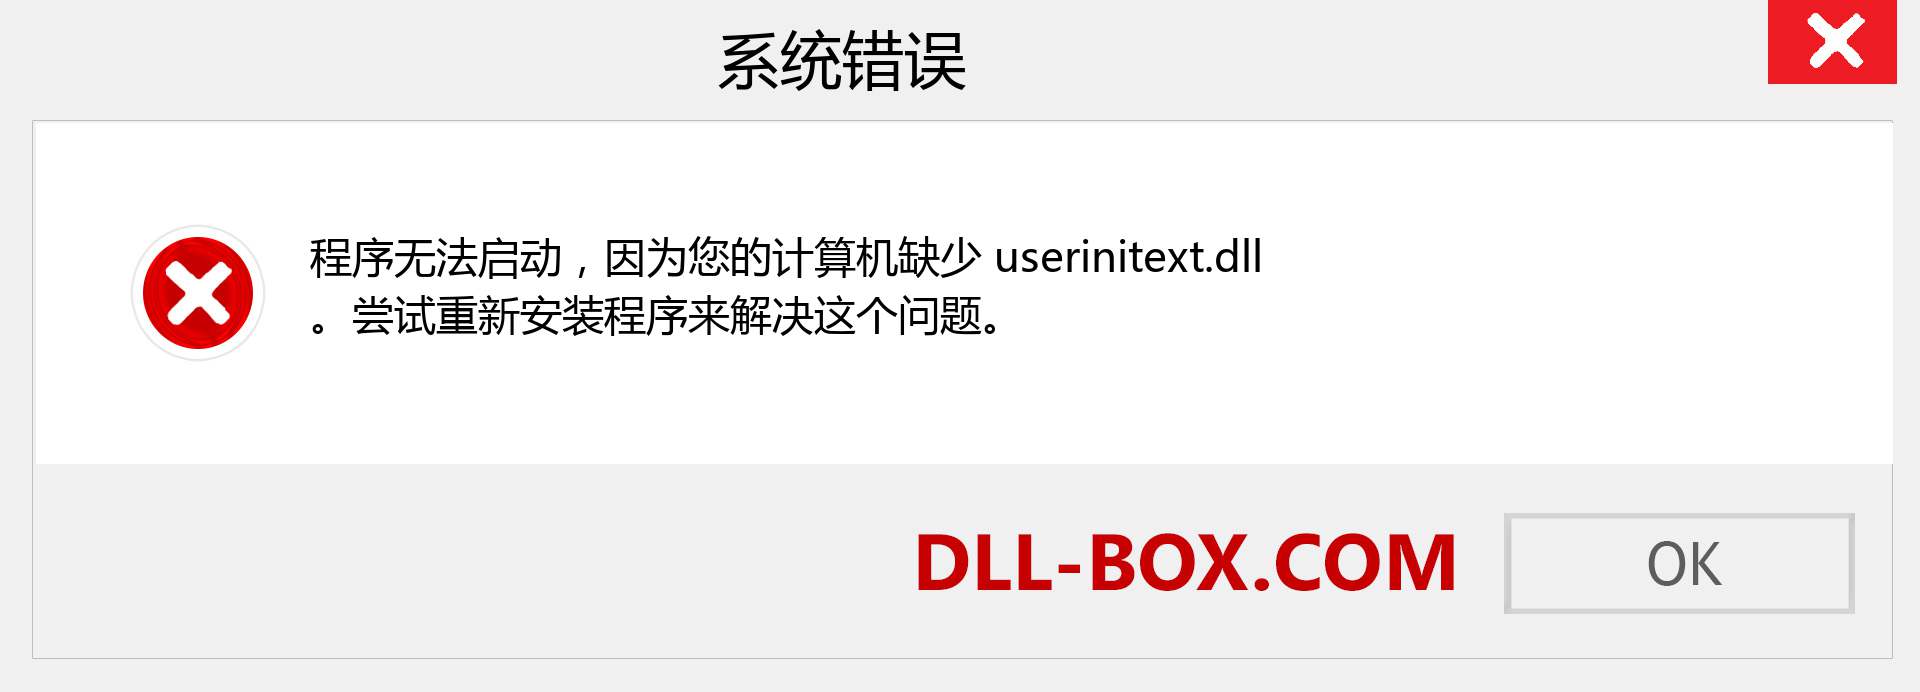 userinitext.dll 文件丢失？。 适用于 Windows 7、8、10 的下载 - 修复 Windows、照片、图像上的 userinitext dll 丢失错误